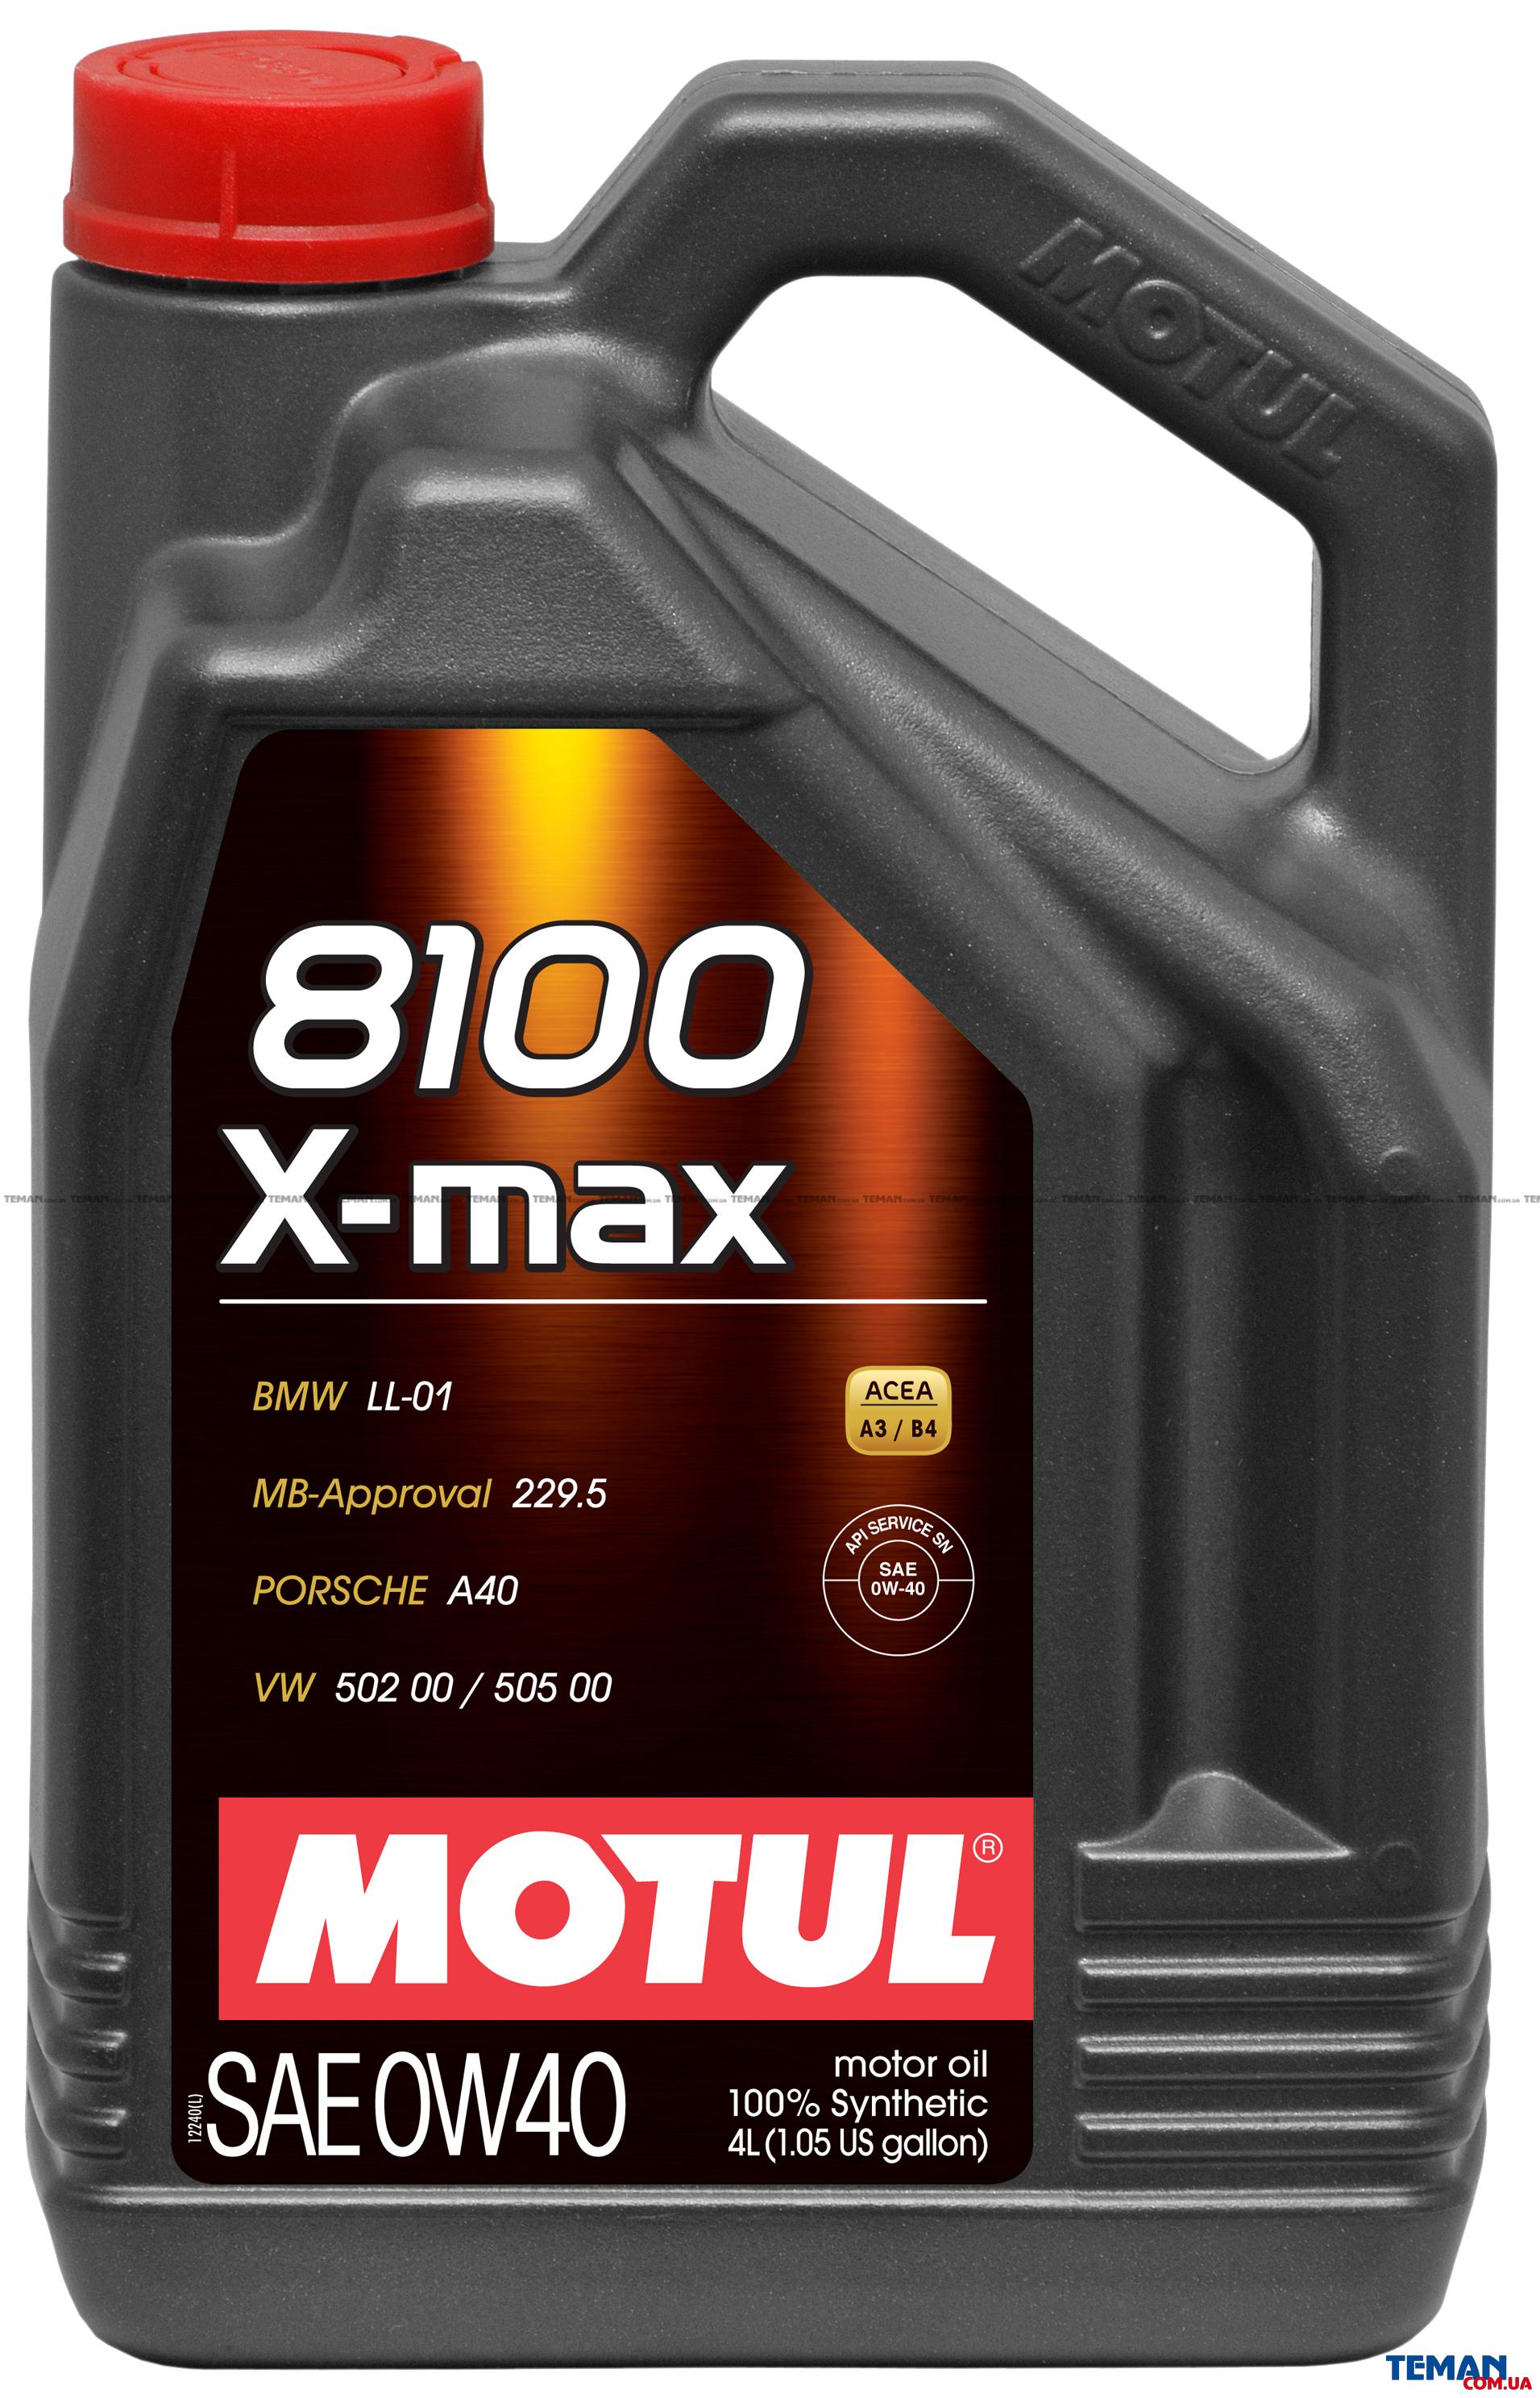  Купить Синтетическое моторное масло 8100 X-max SAE 0W40, 4 лMOTUL 348207   